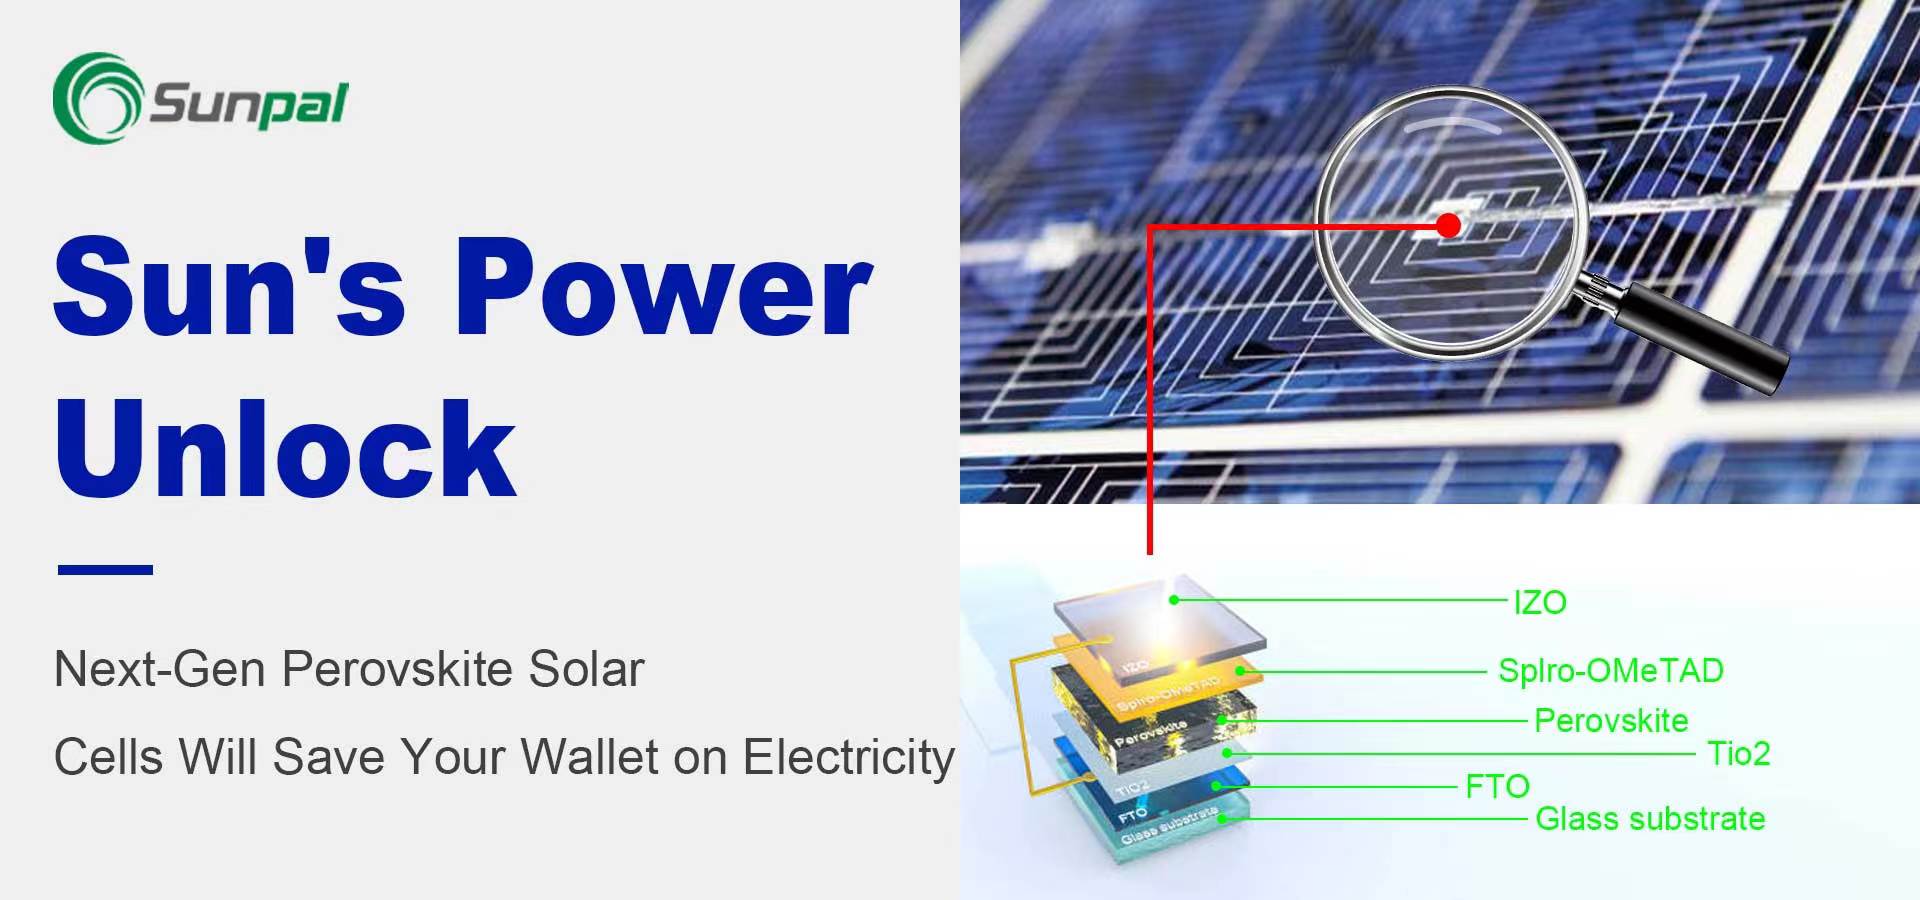 Les cellules solaires de nouvelle génération réduiront considérablement les coûts de l’électricité
        